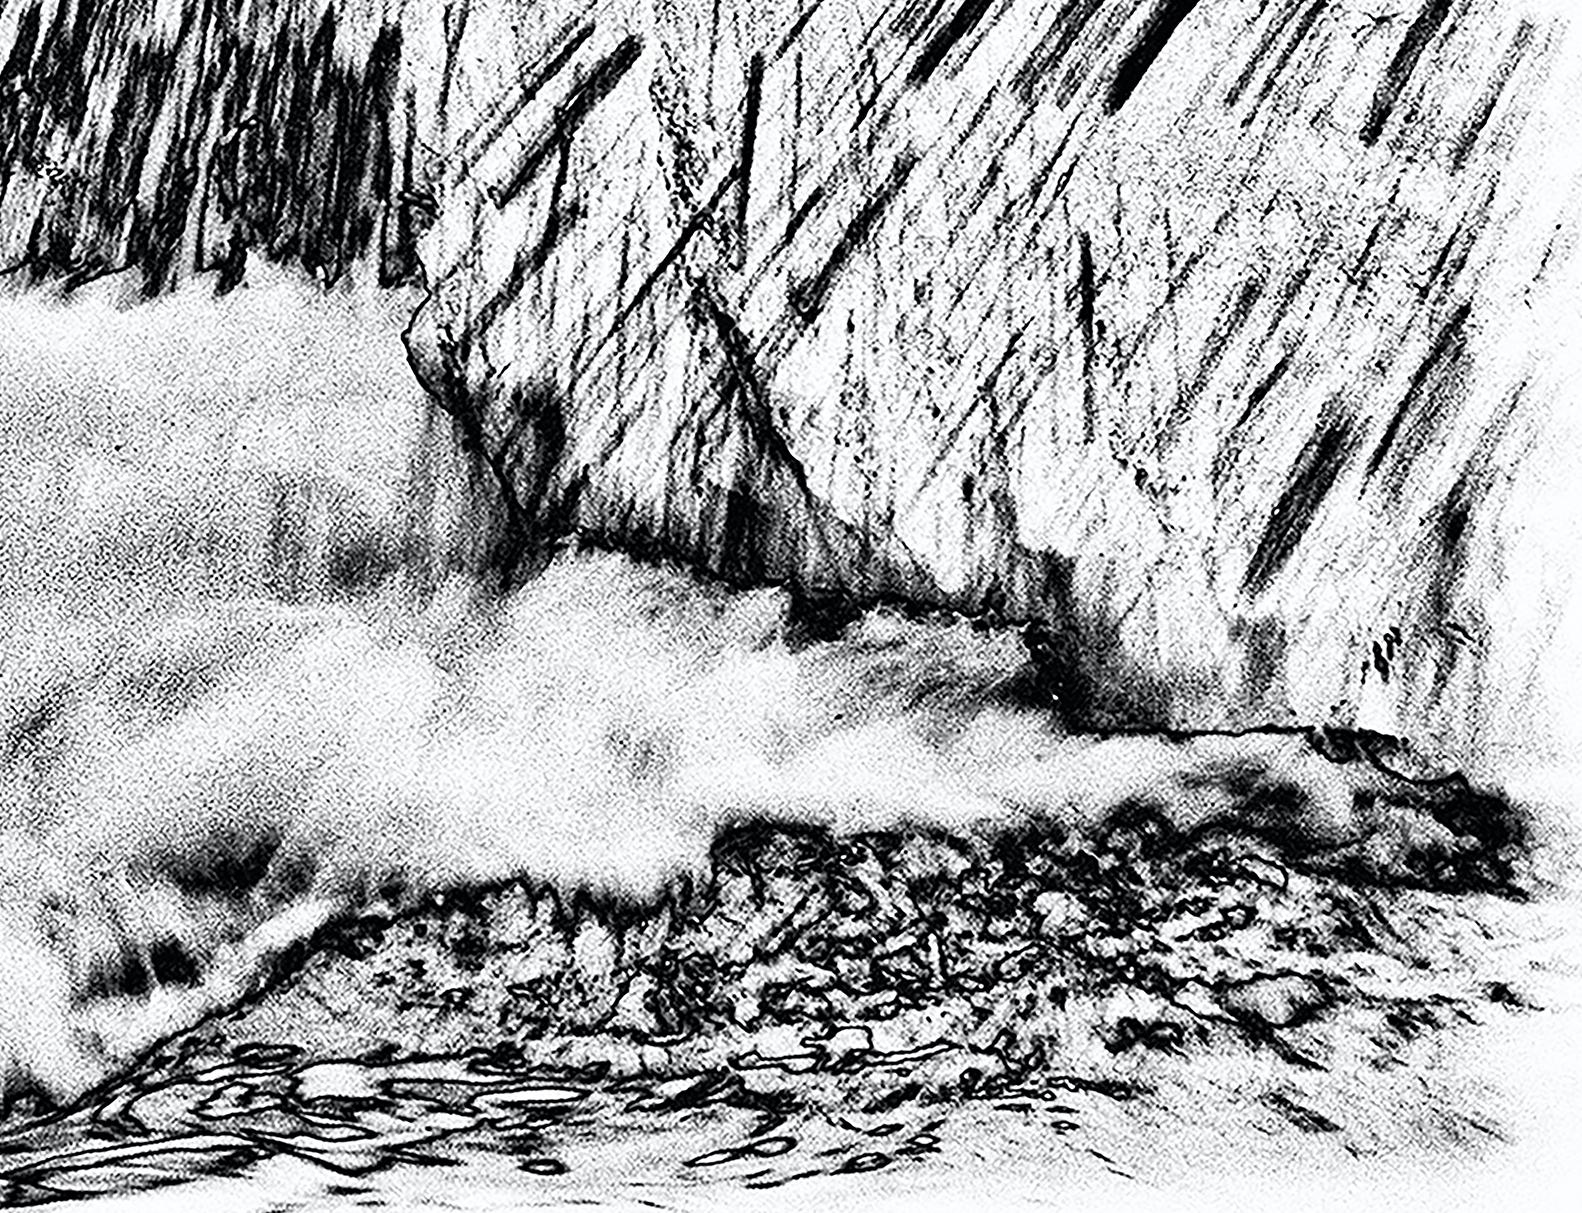 Wassermusik-Serie #4996: Landschaftsfotografie (Impressionismus), Photograph, von Holly Gordon